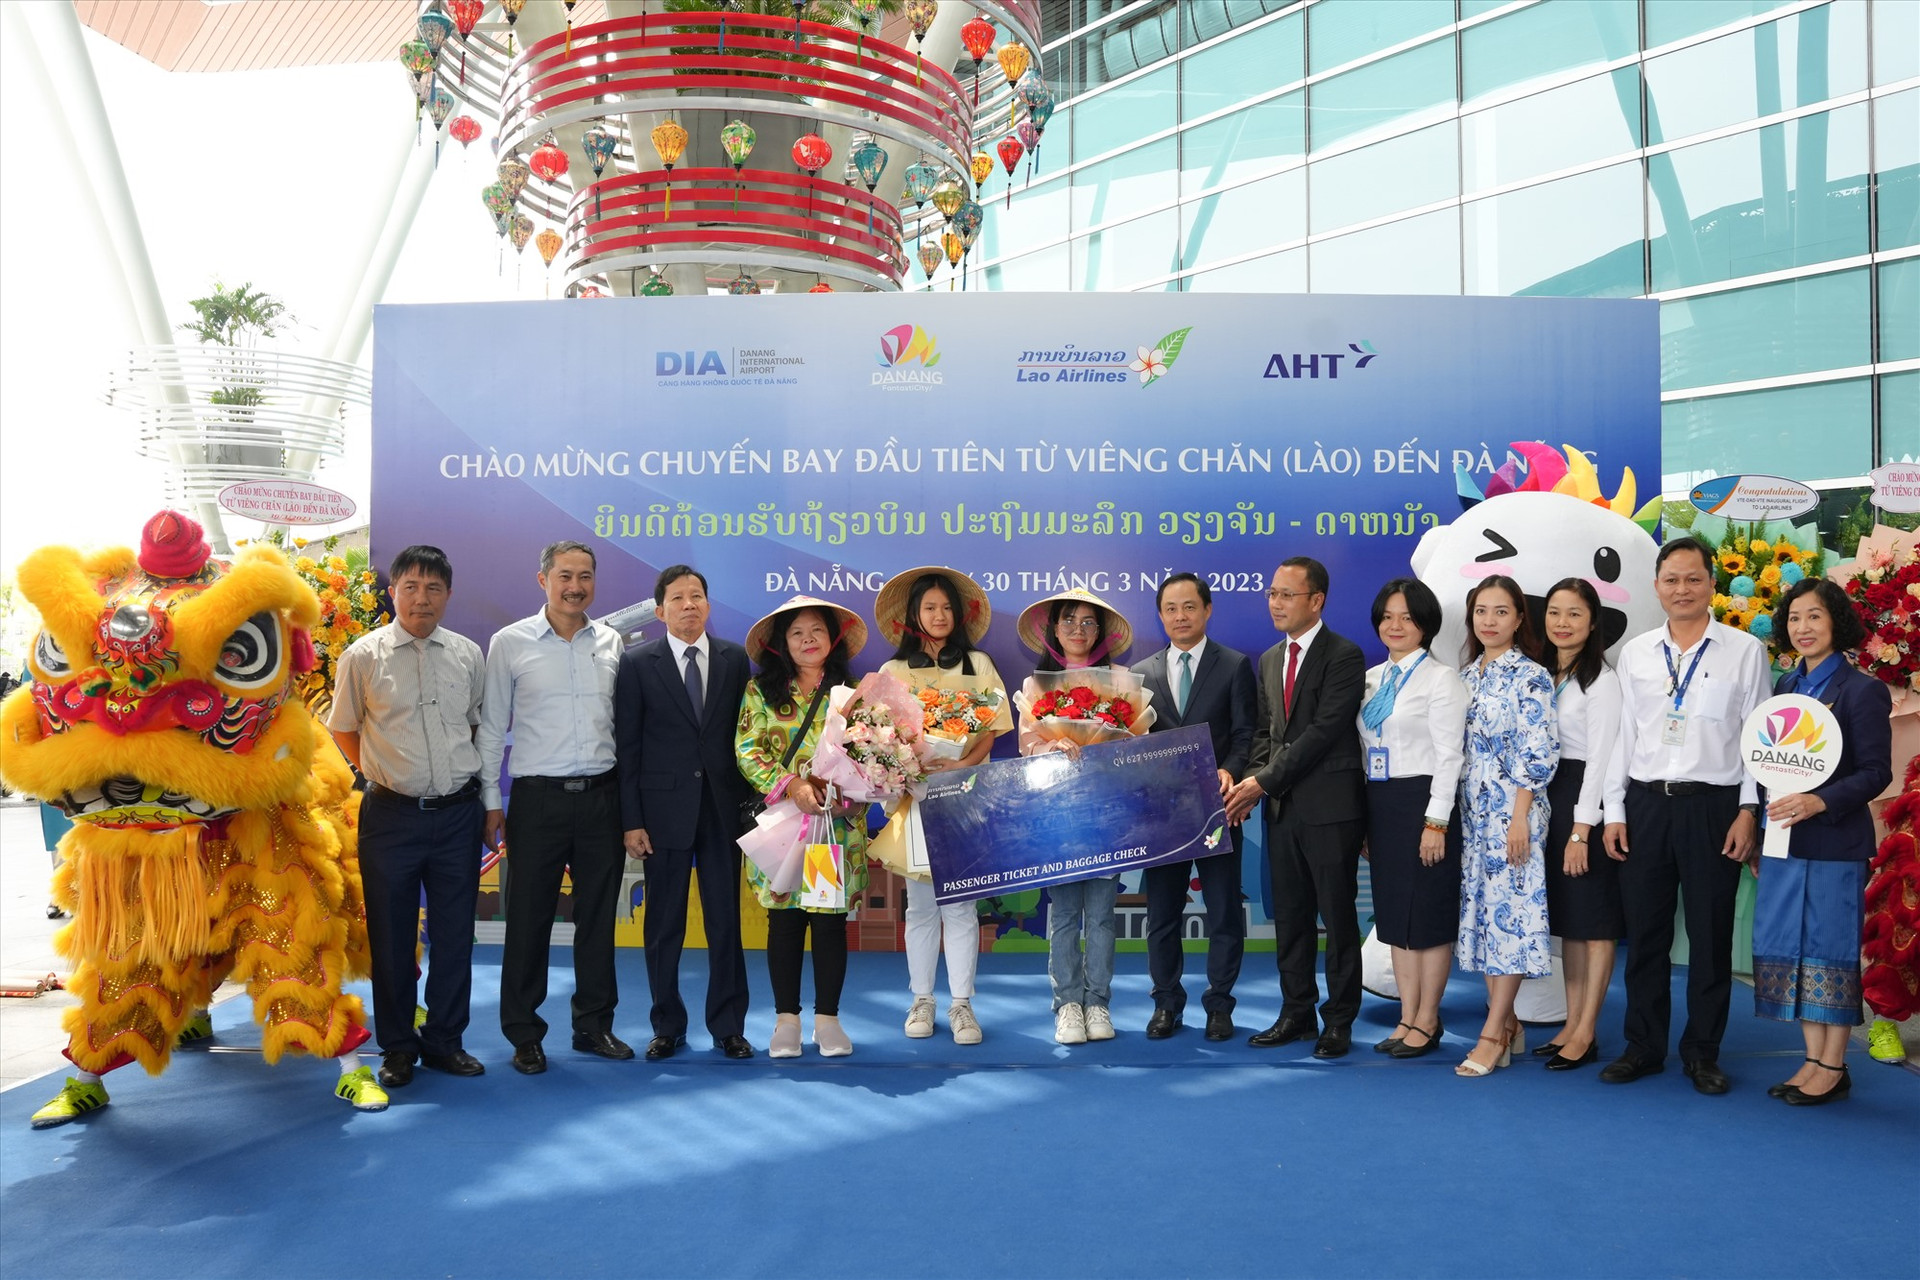 Lãnh đạo Sở Du lịch Đà Nẵng và Lao Airlines tặng quà cho 3 hành khách may mắn chuyến bay Viêng Chăn -Đà Nẵng ngày 30/3/2023. Ảnh XL